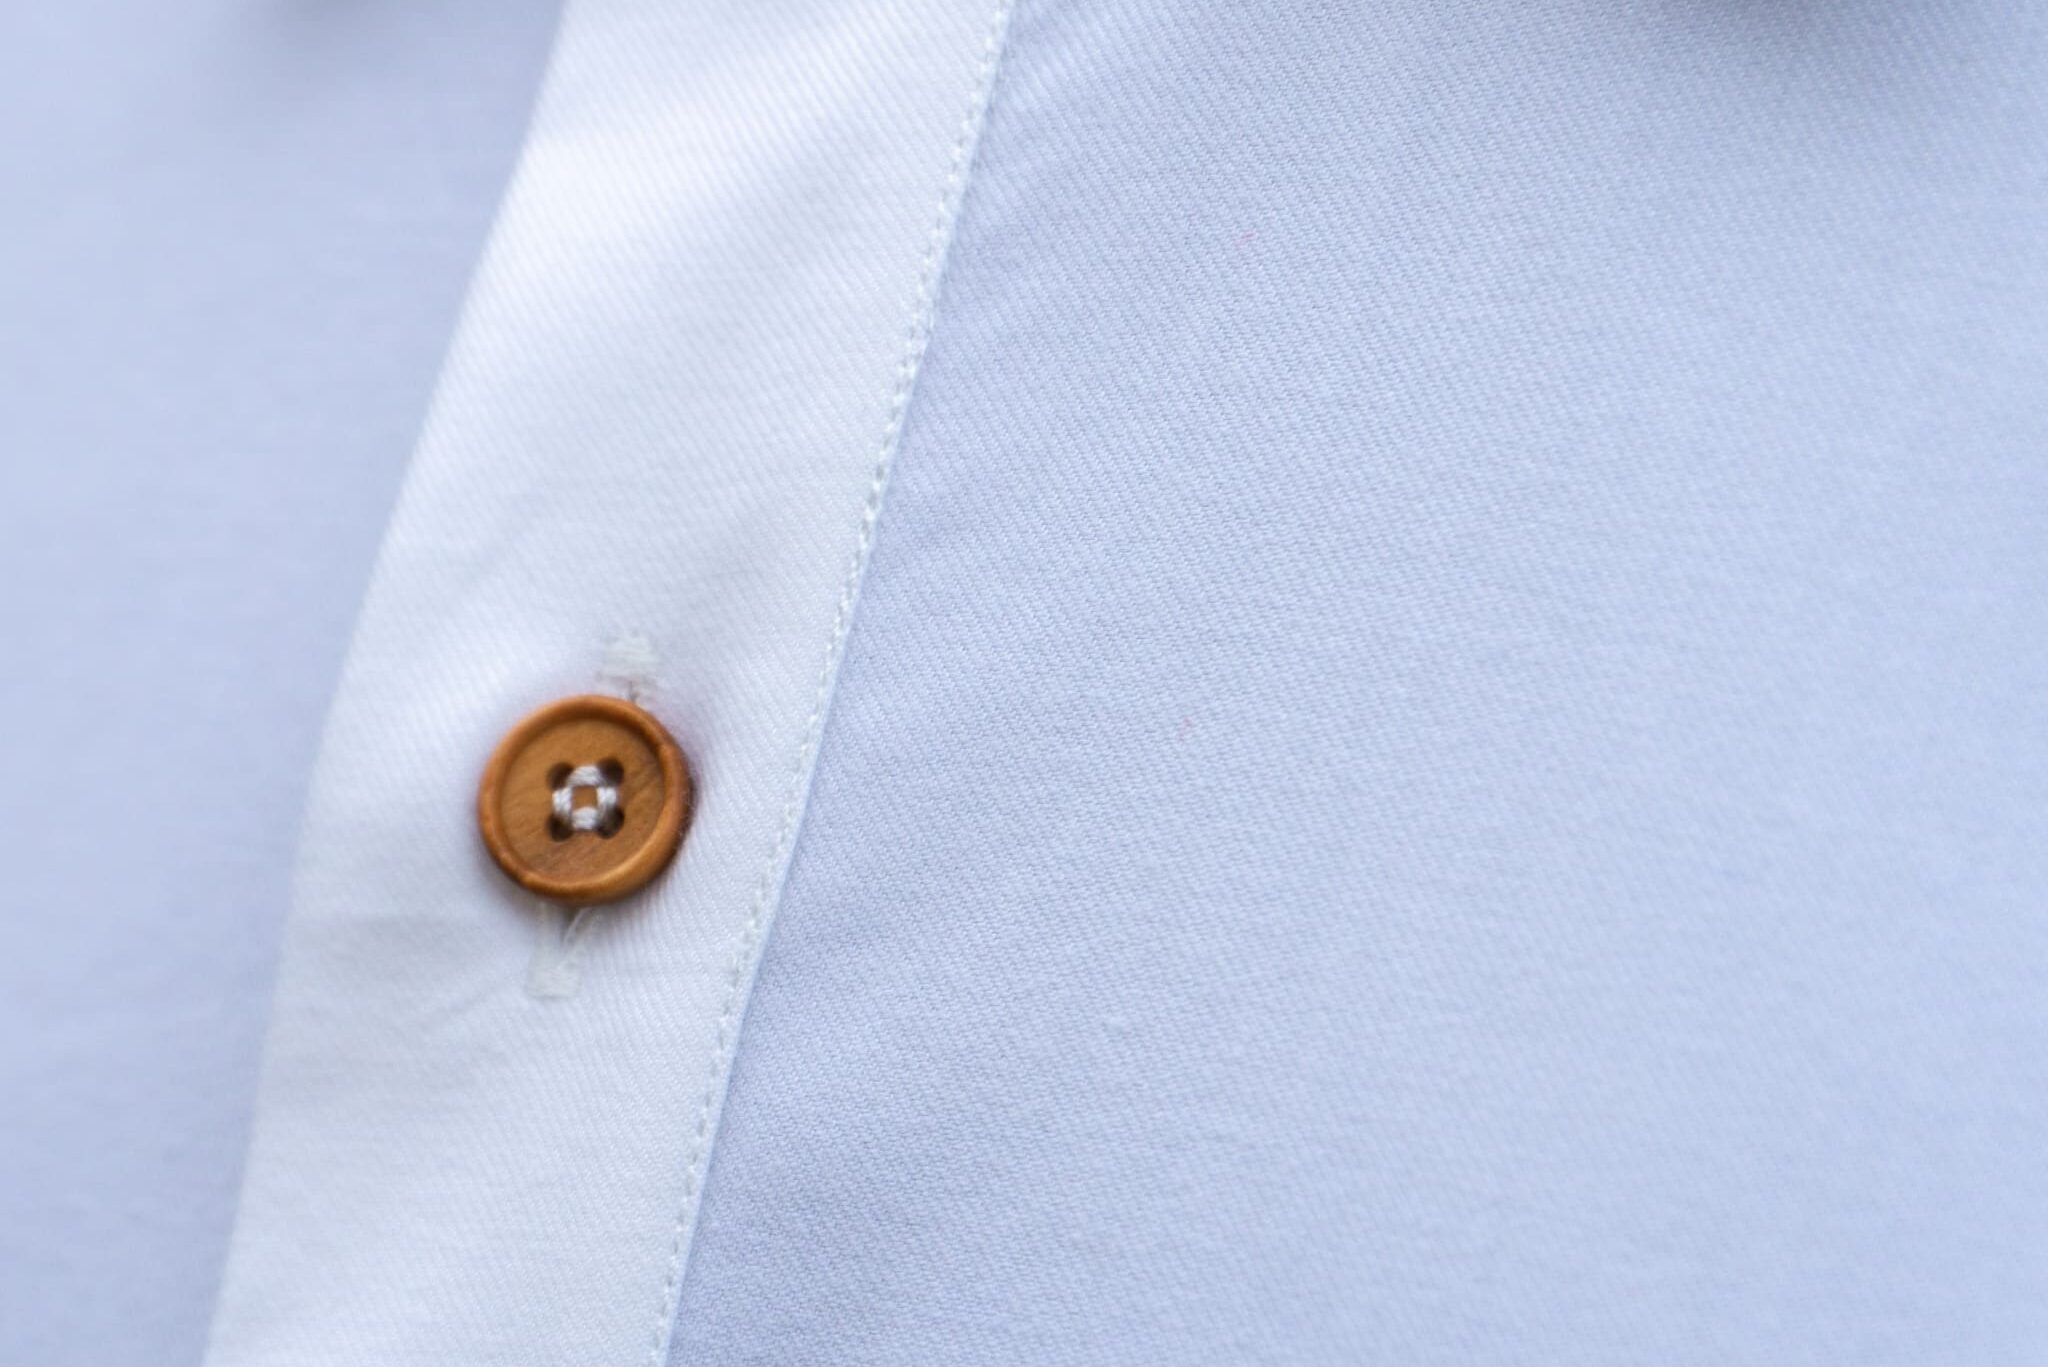 Chemise popover - Popover shirt | Tissu Cashmerello - Zoom bouton en bois d'olivier - chemises sur mesure réalisées par Revenga Chemisiers Genevois